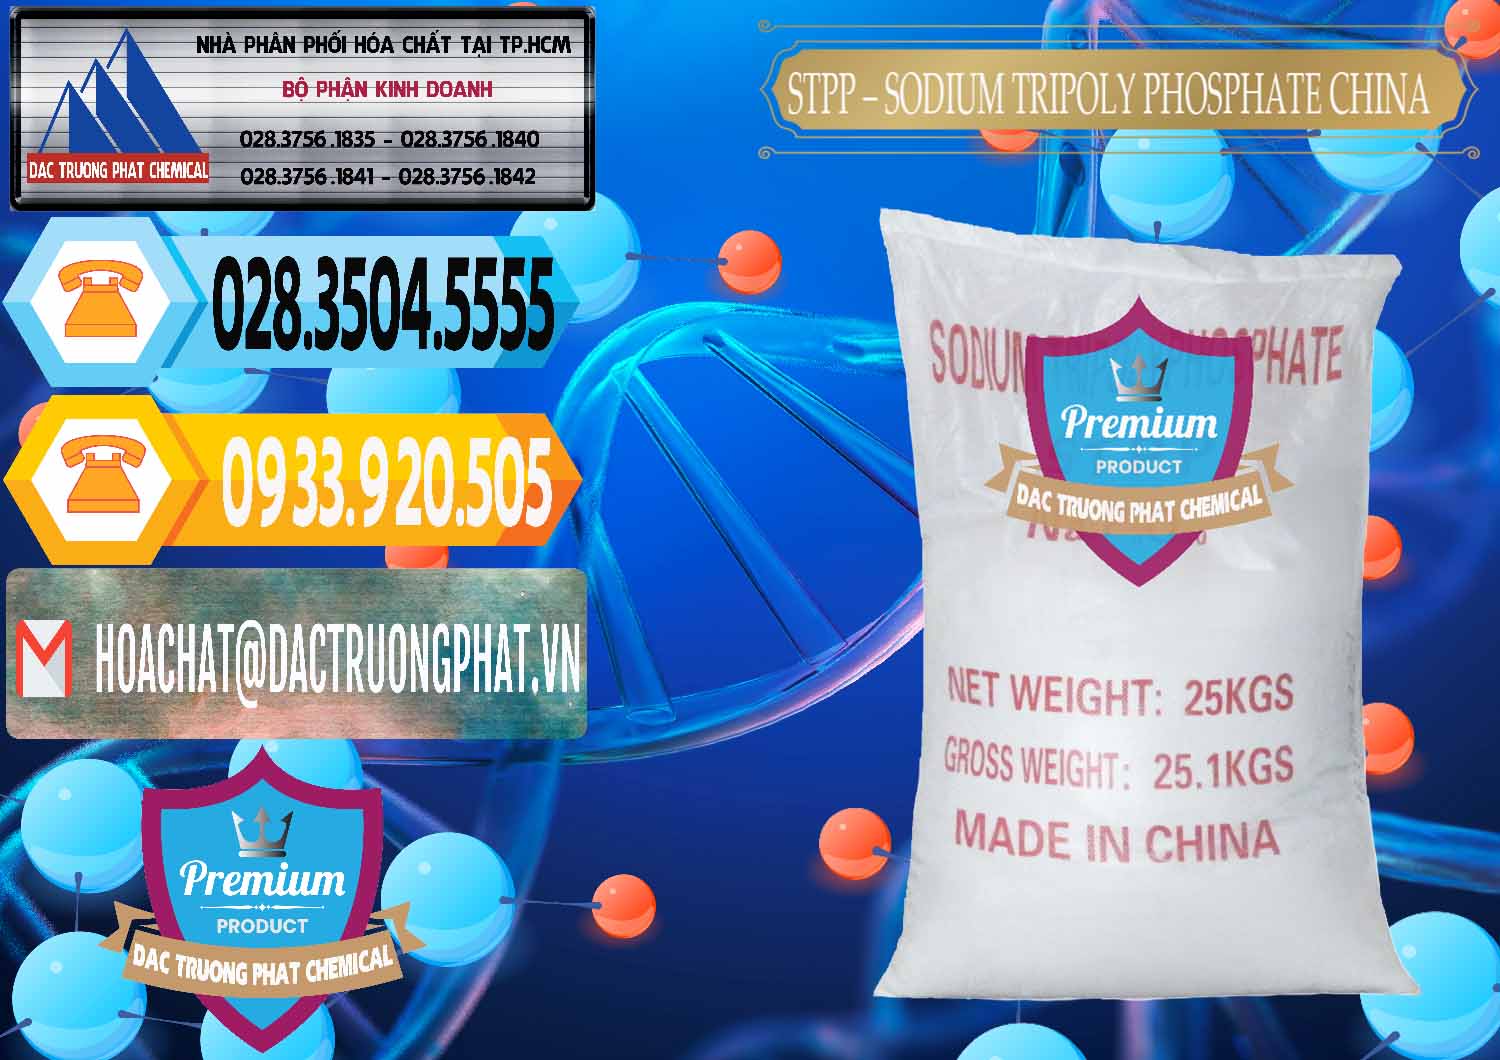 Đơn vị phân phối và bán Sodium Tripoly Phosphate - STPP 96% Chữ Đỏ Trung Quốc China - 0155 - Công ty phân phối - cung cấp hóa chất tại TP.HCM - hoachattayrua.net